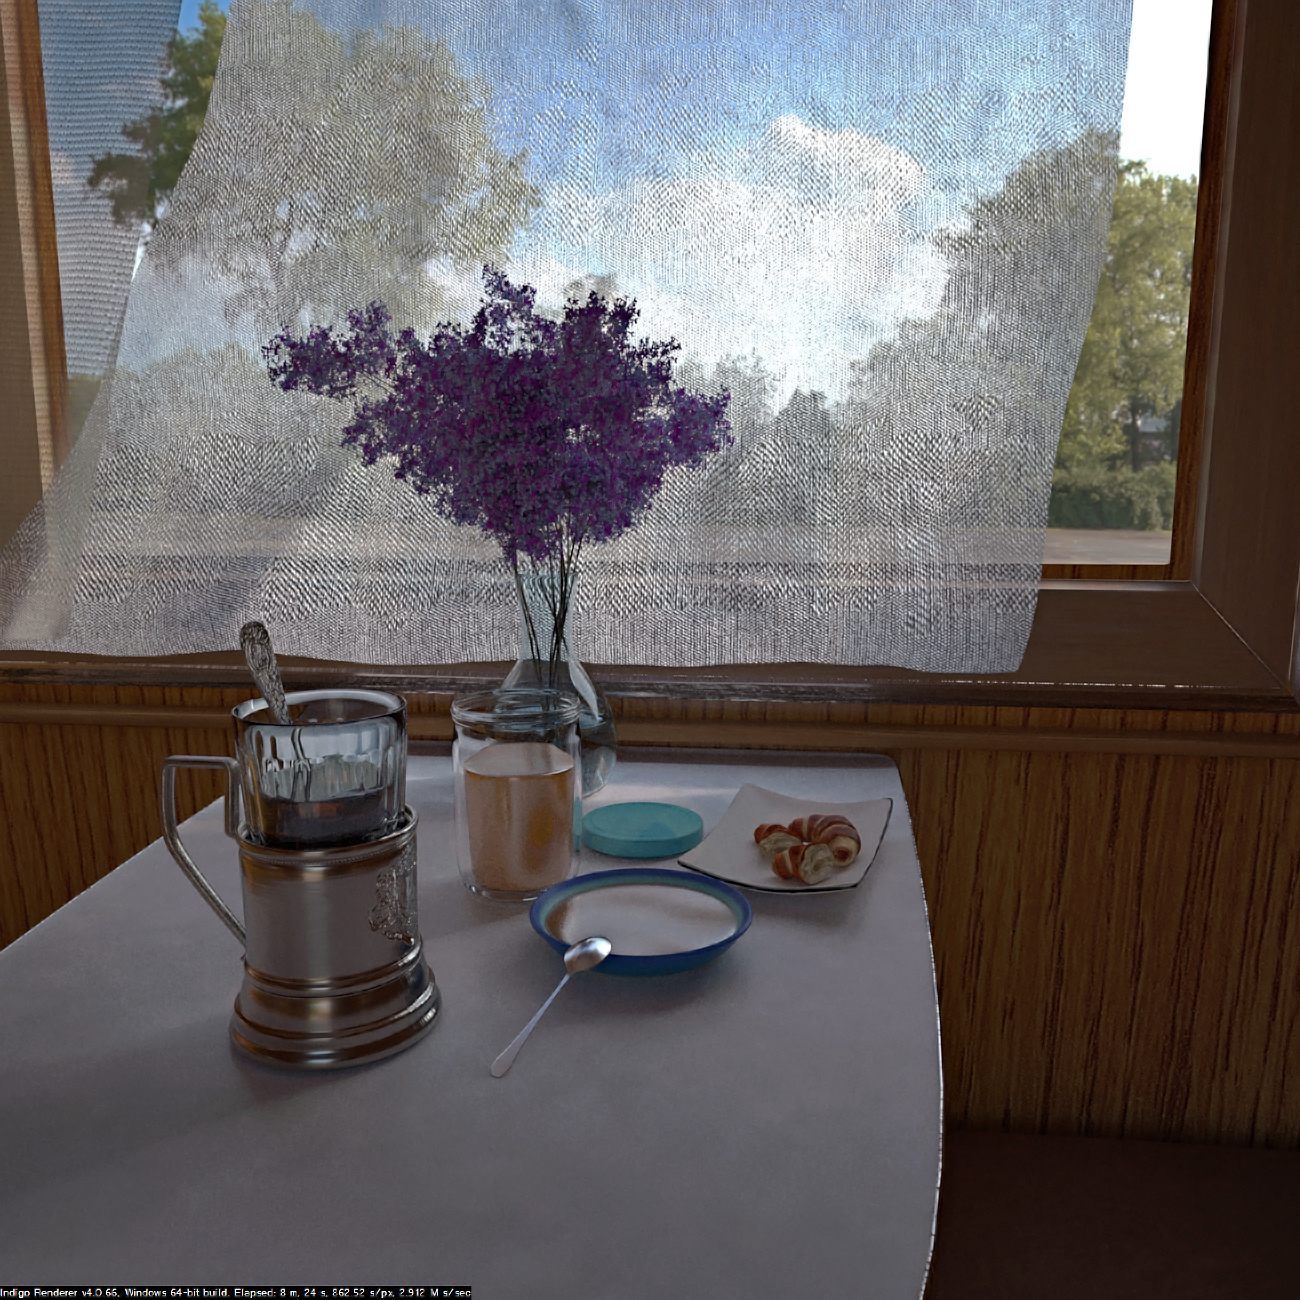 Dans le compartiment (petit-déjeuner léger ... ou dîner) dans Cinema 4d indigo renderer image